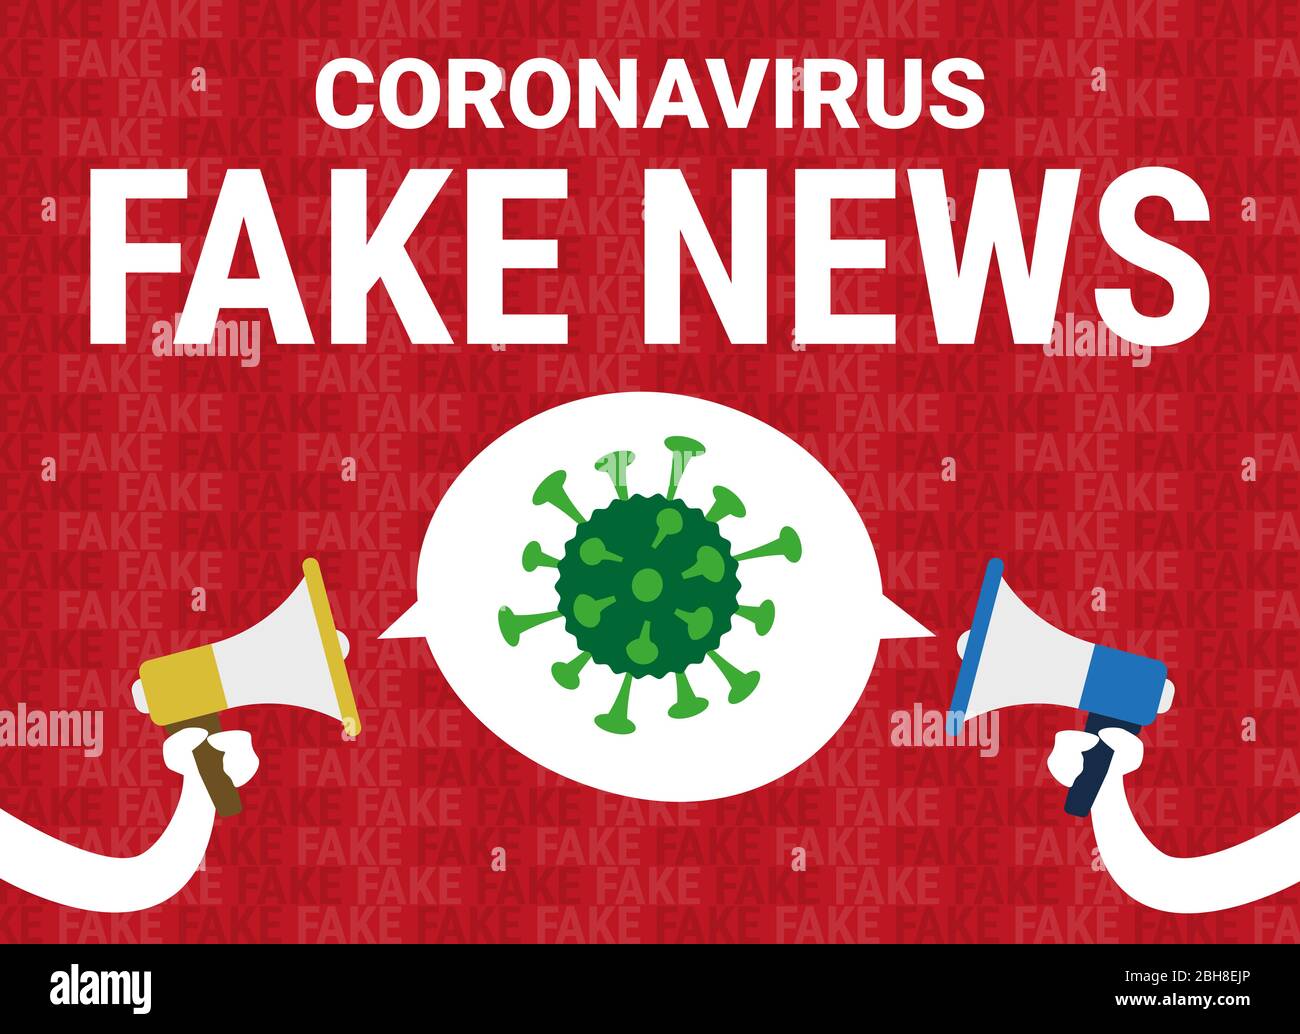 Vektorgrafik eines Banners mit zwei Megaphonen, die gefälschte Nachrichten über das Covid-19 Coronavirus verbreiten Stockfoto